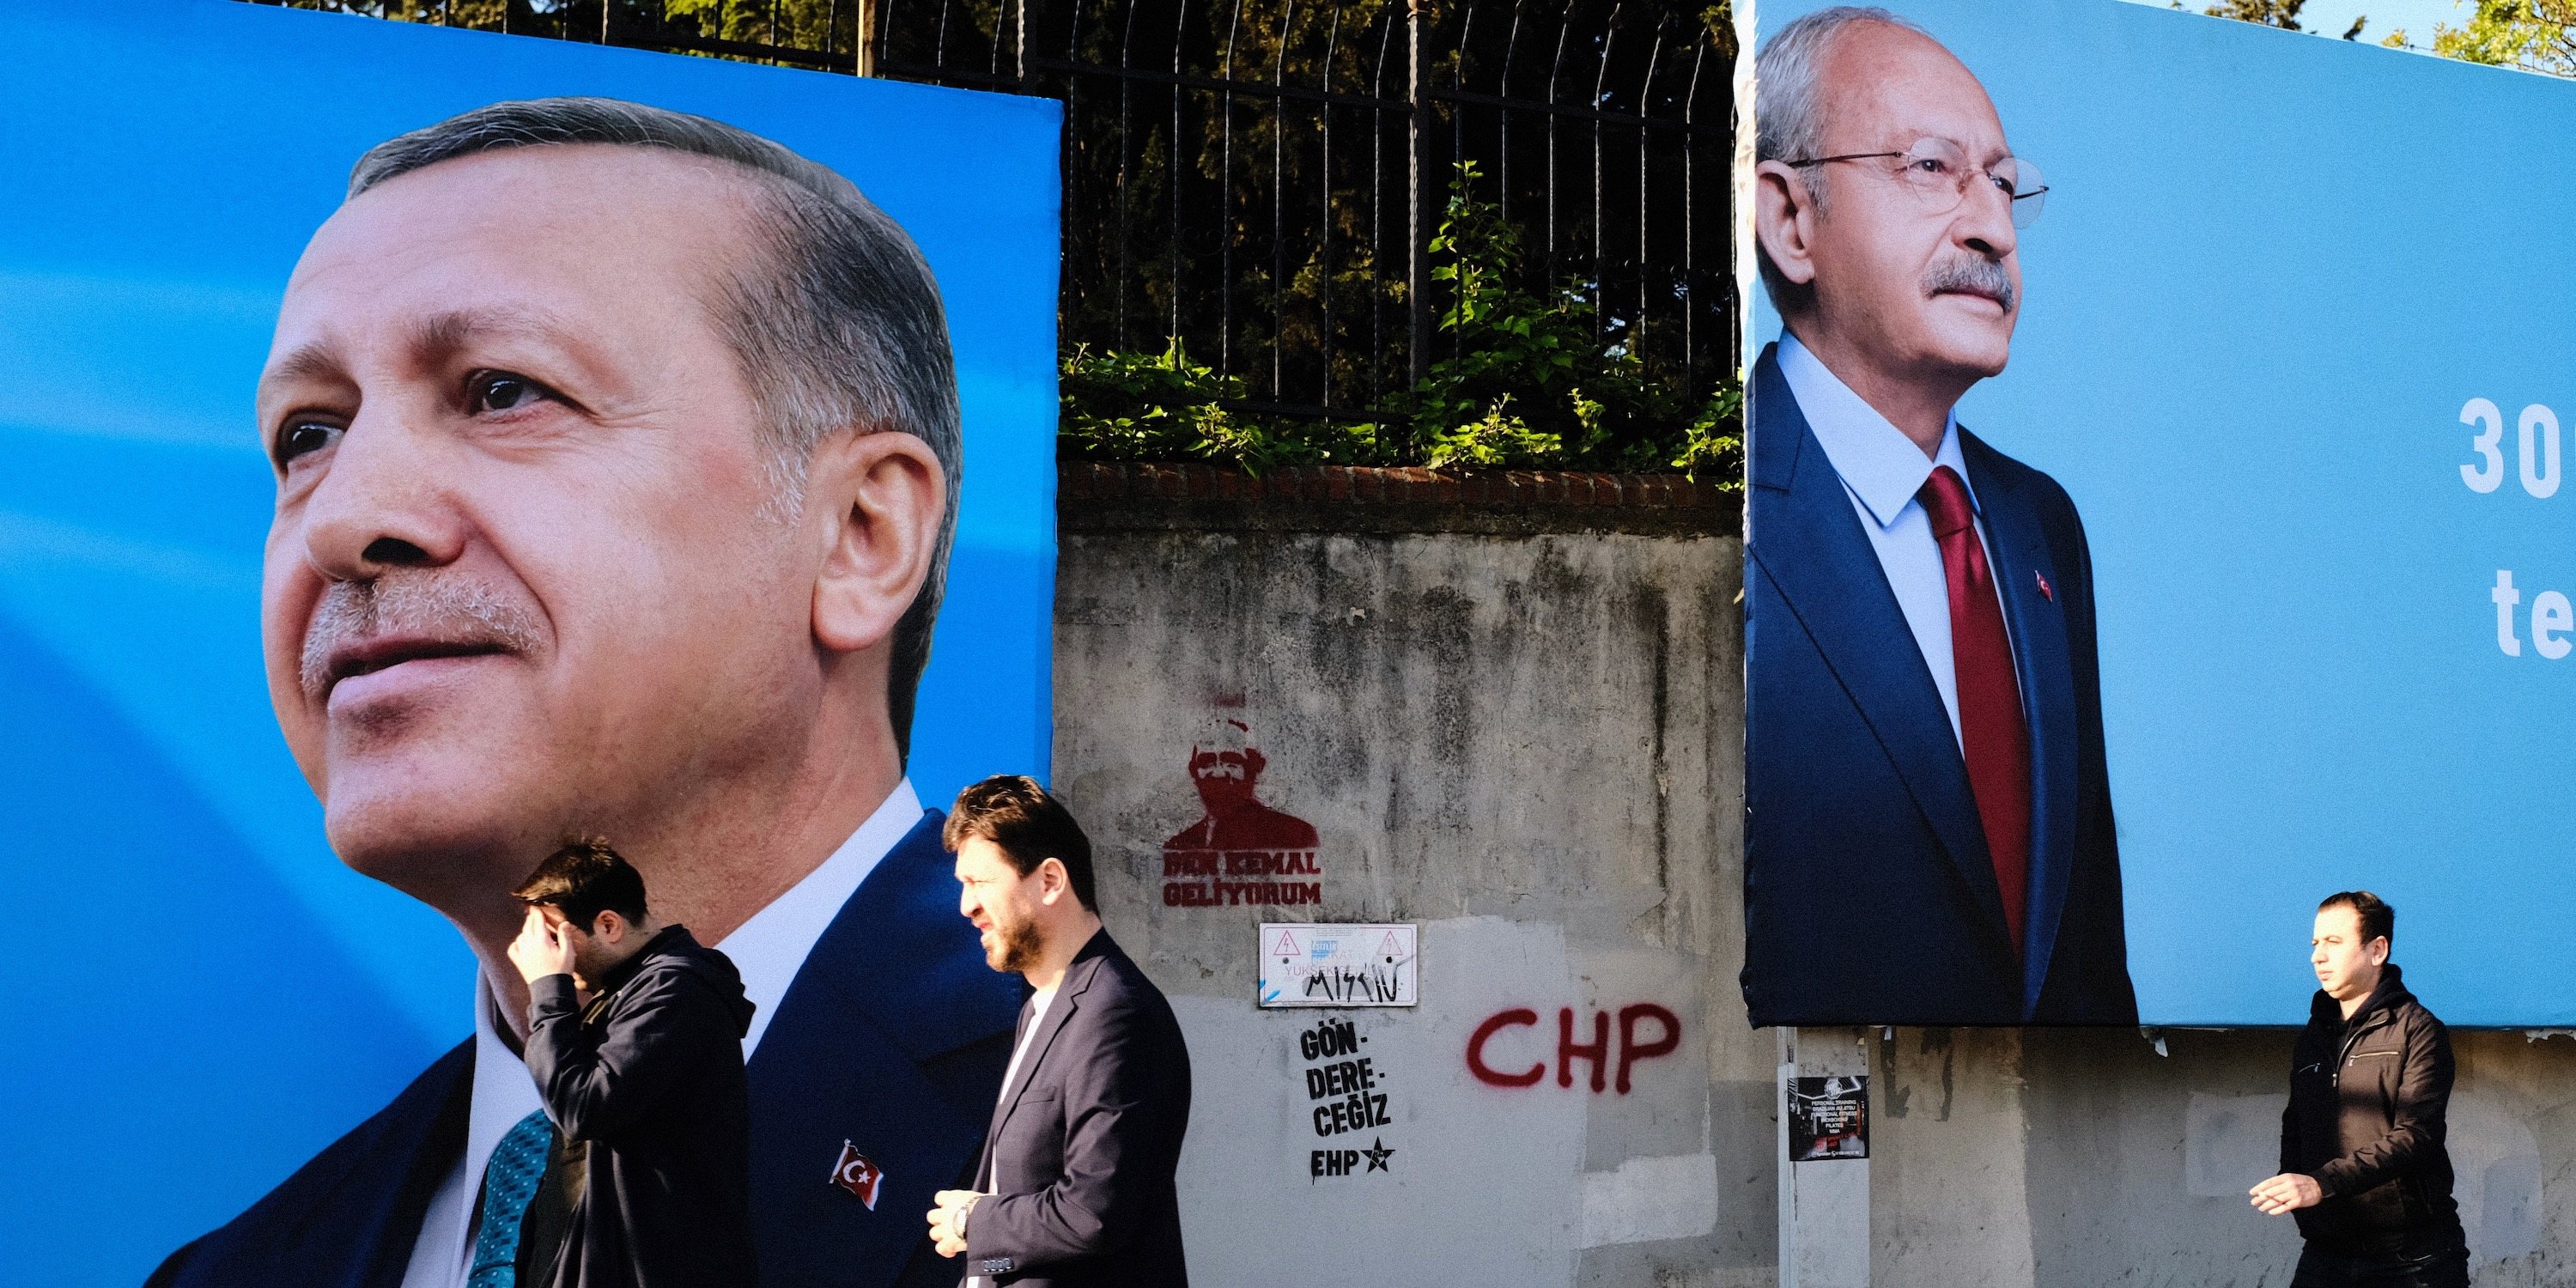 Algumas das sondagens têm mostrado um cenário bastante positivo para Kemal Kılıçdaroğlu, que tem ficado à frente de Erdoğan por alguns pontos percentuais